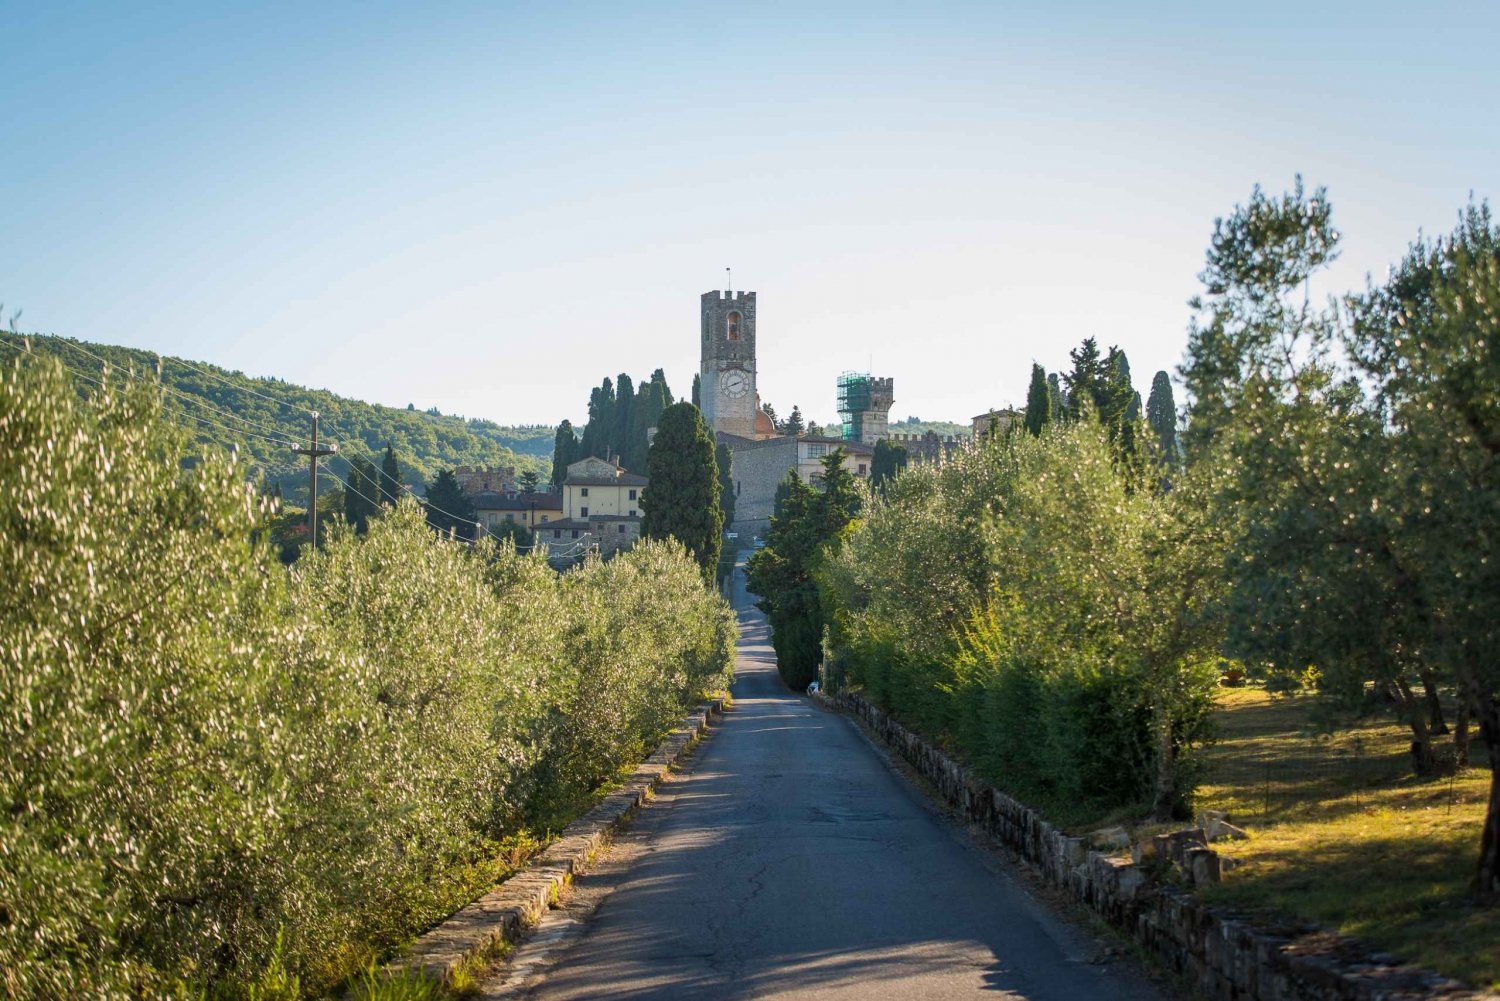 Fra Firenze: Guidet tur i Chianti med toskansk vinsmaking